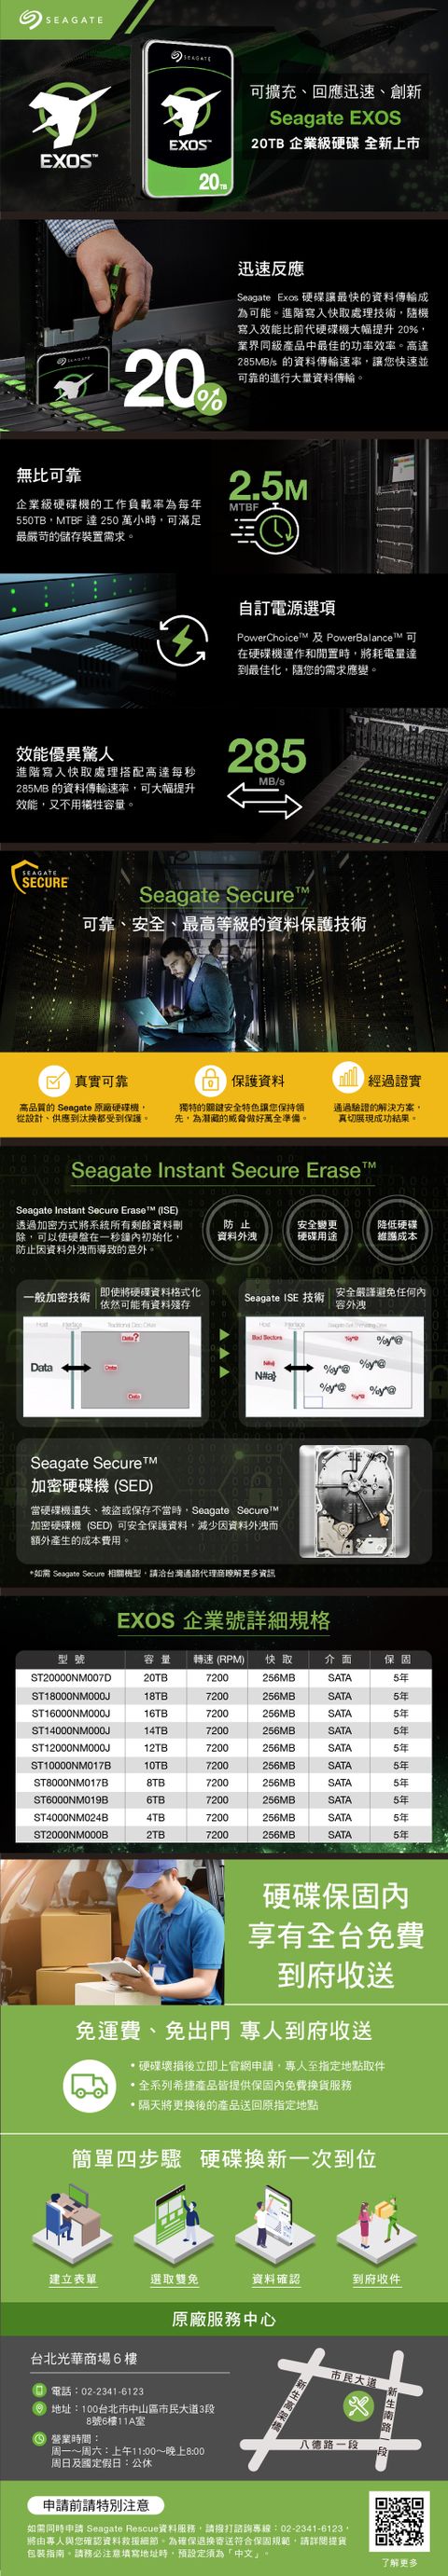 Seagate 20TB 3.5 SATA3 HDD-T20T-ST20000NM007D Internal Enterprise Hard  Drive